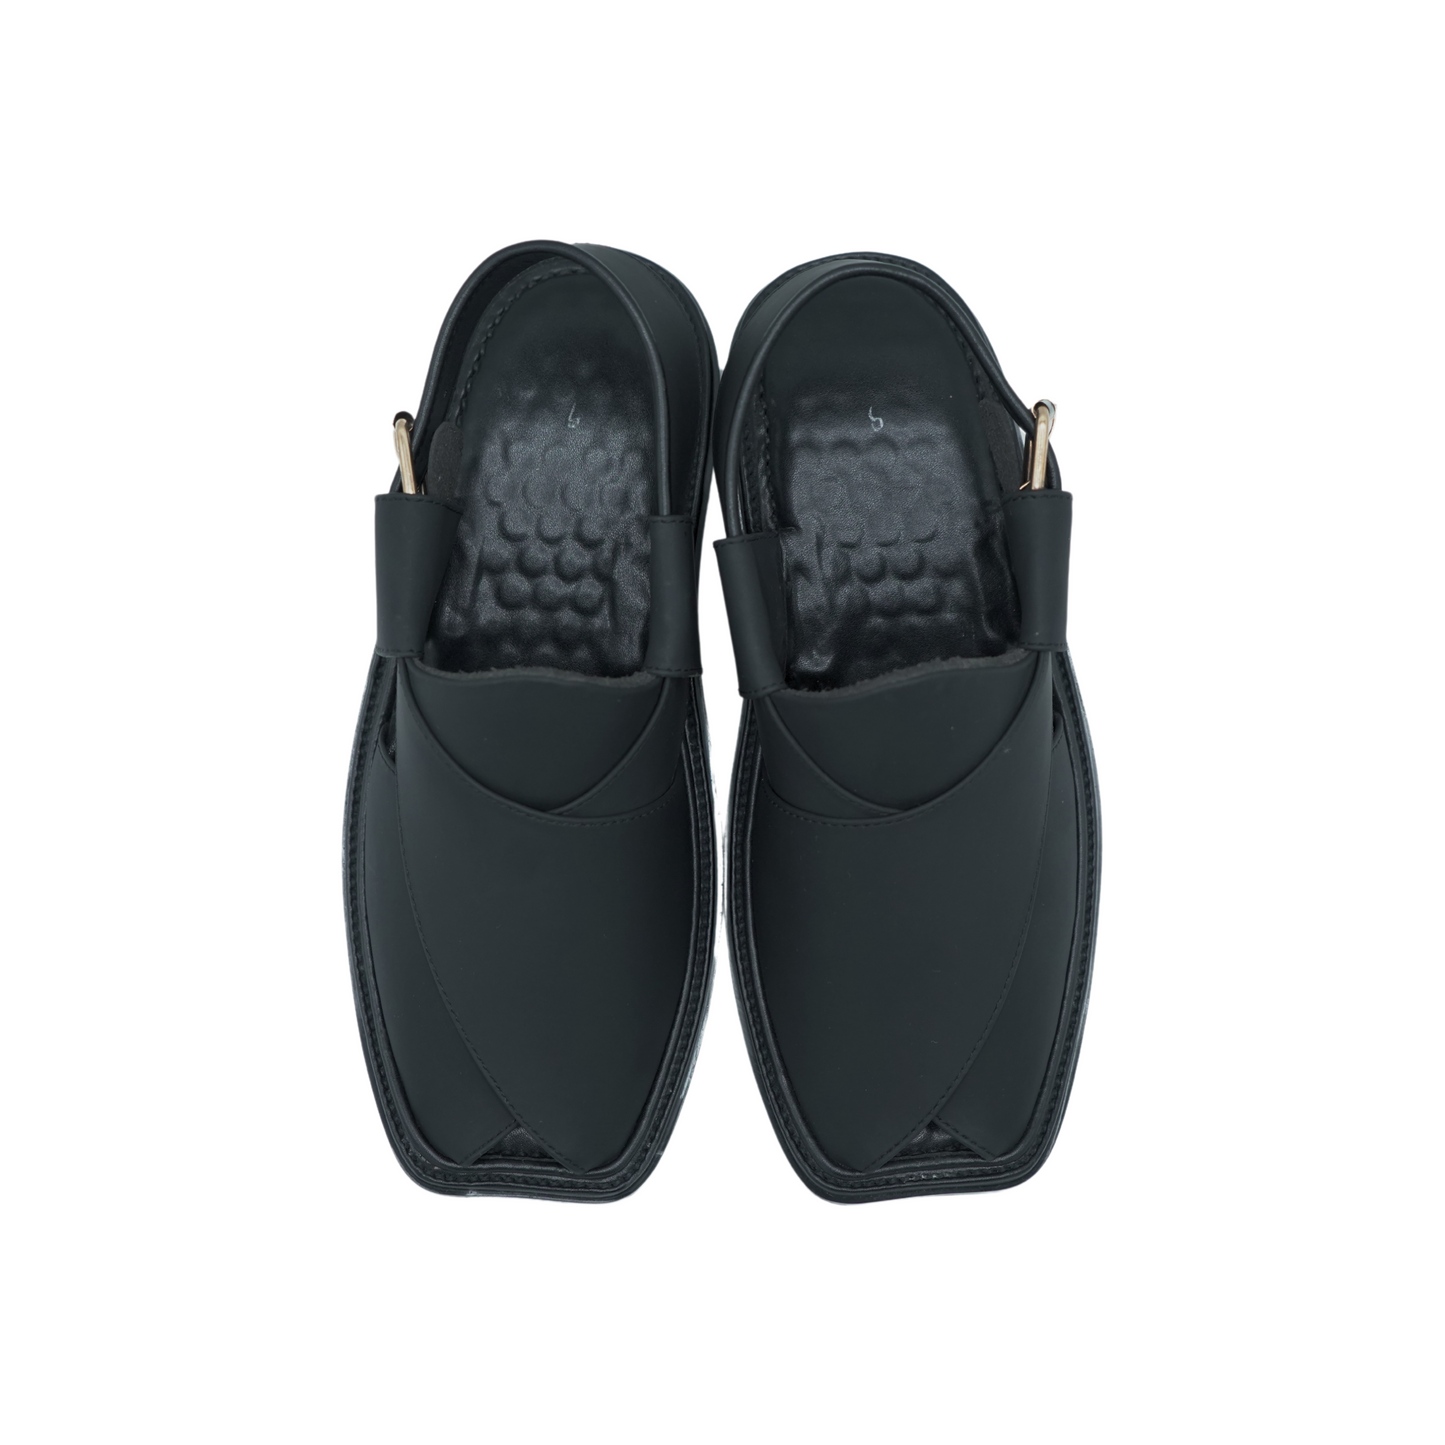 Black leather sandals for men - Pakistan 